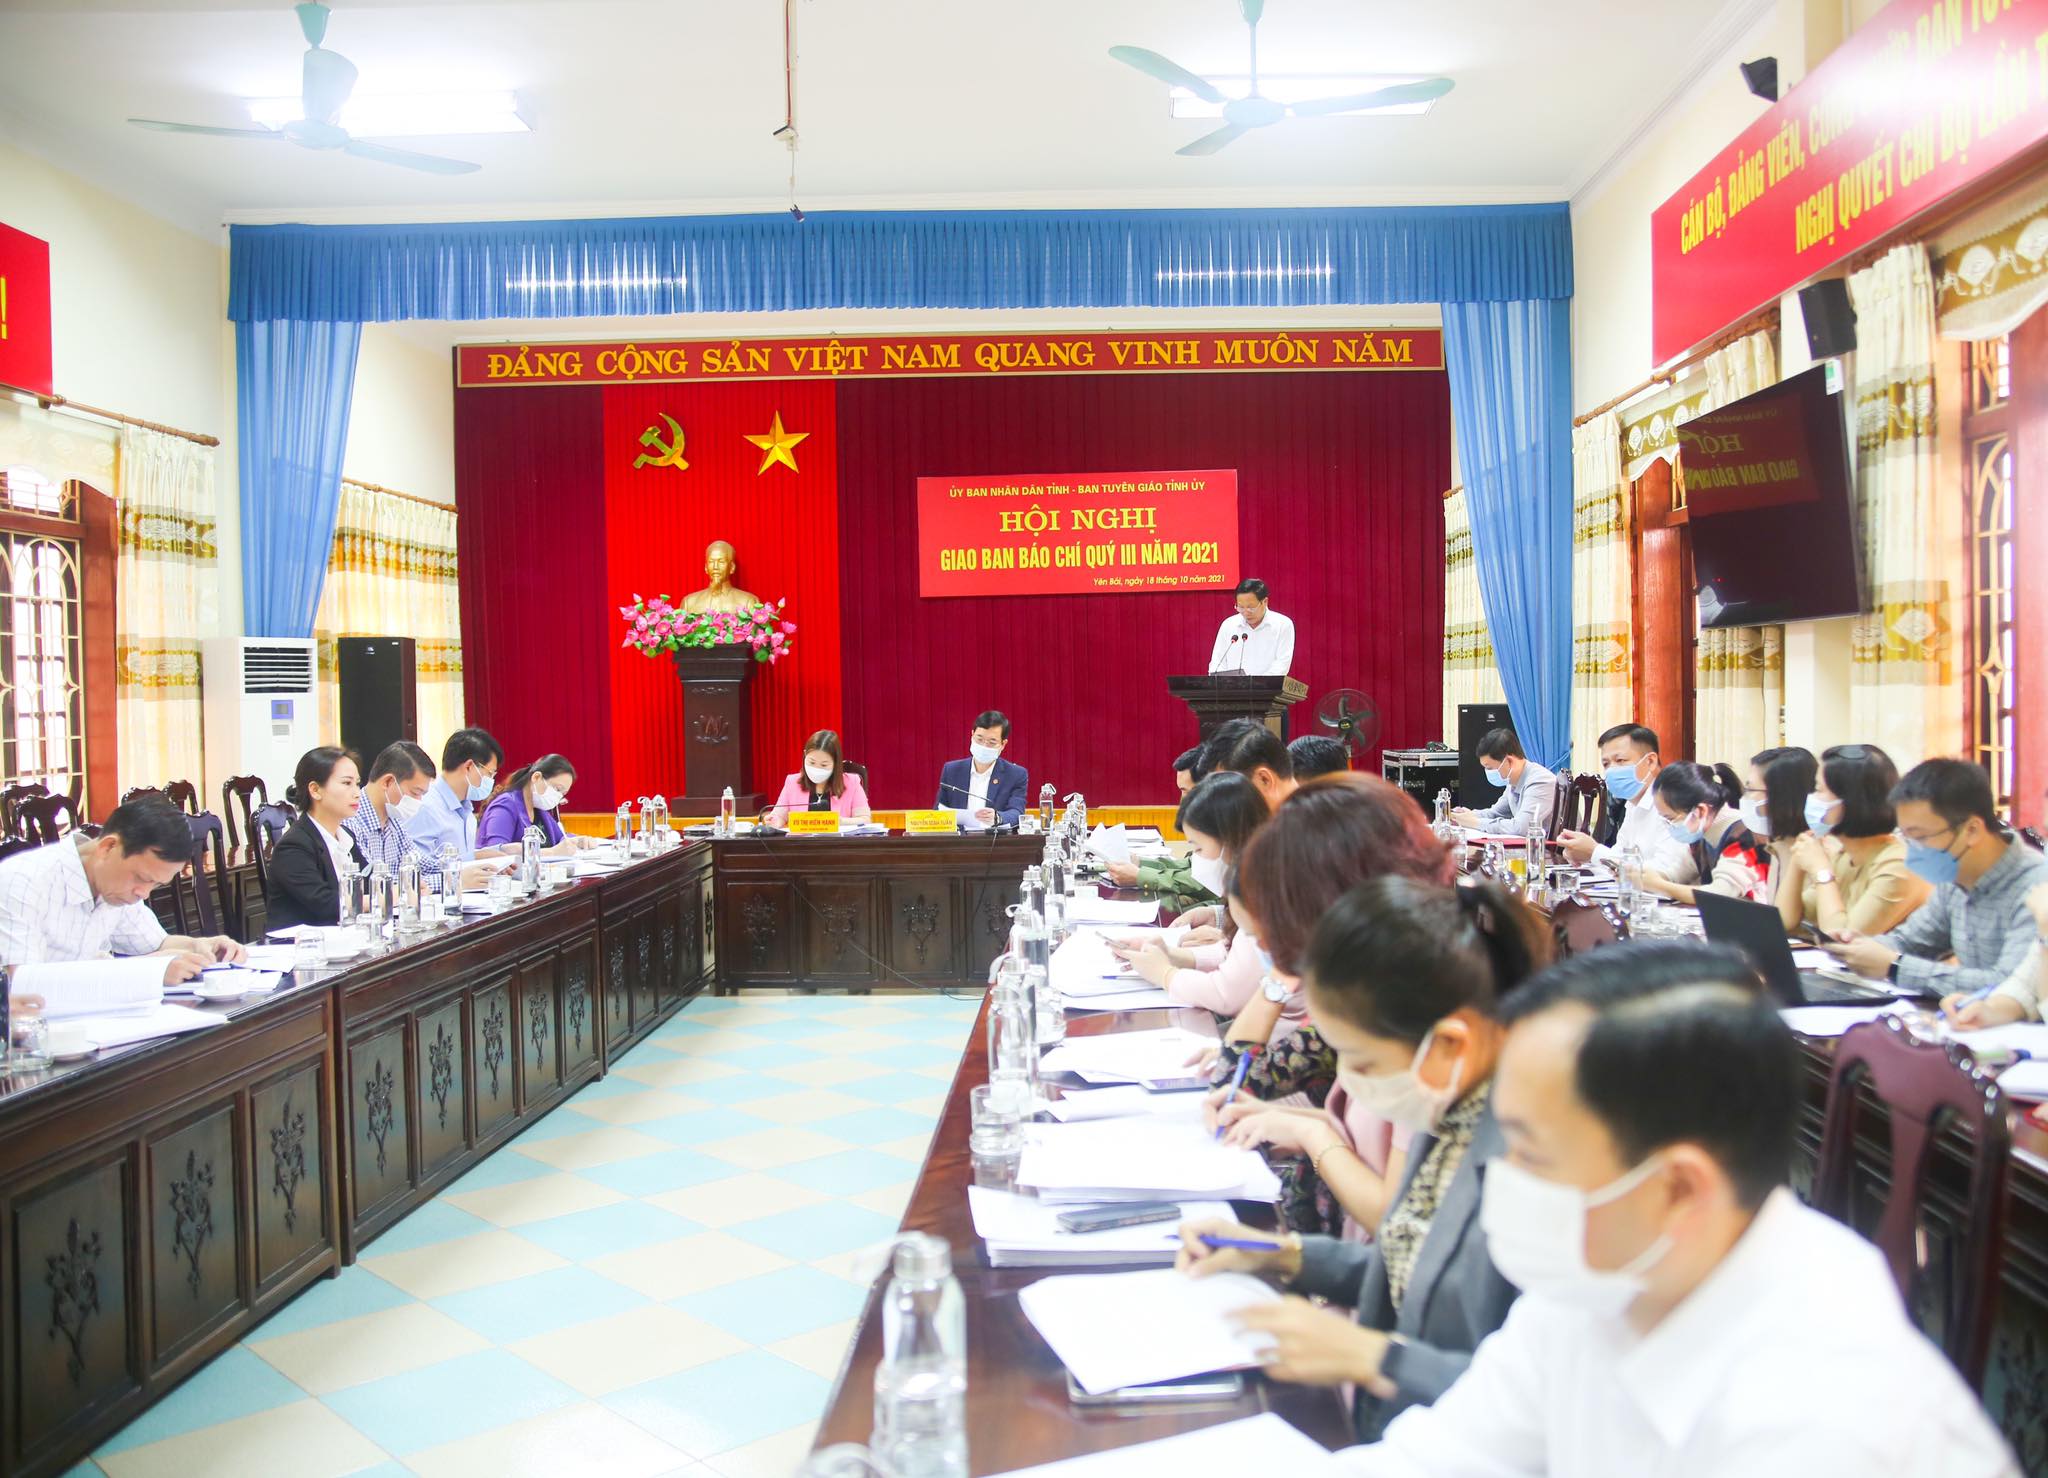 Hội nghị giao ban báo chí tỉnh Yên Bái quý III năm 2021